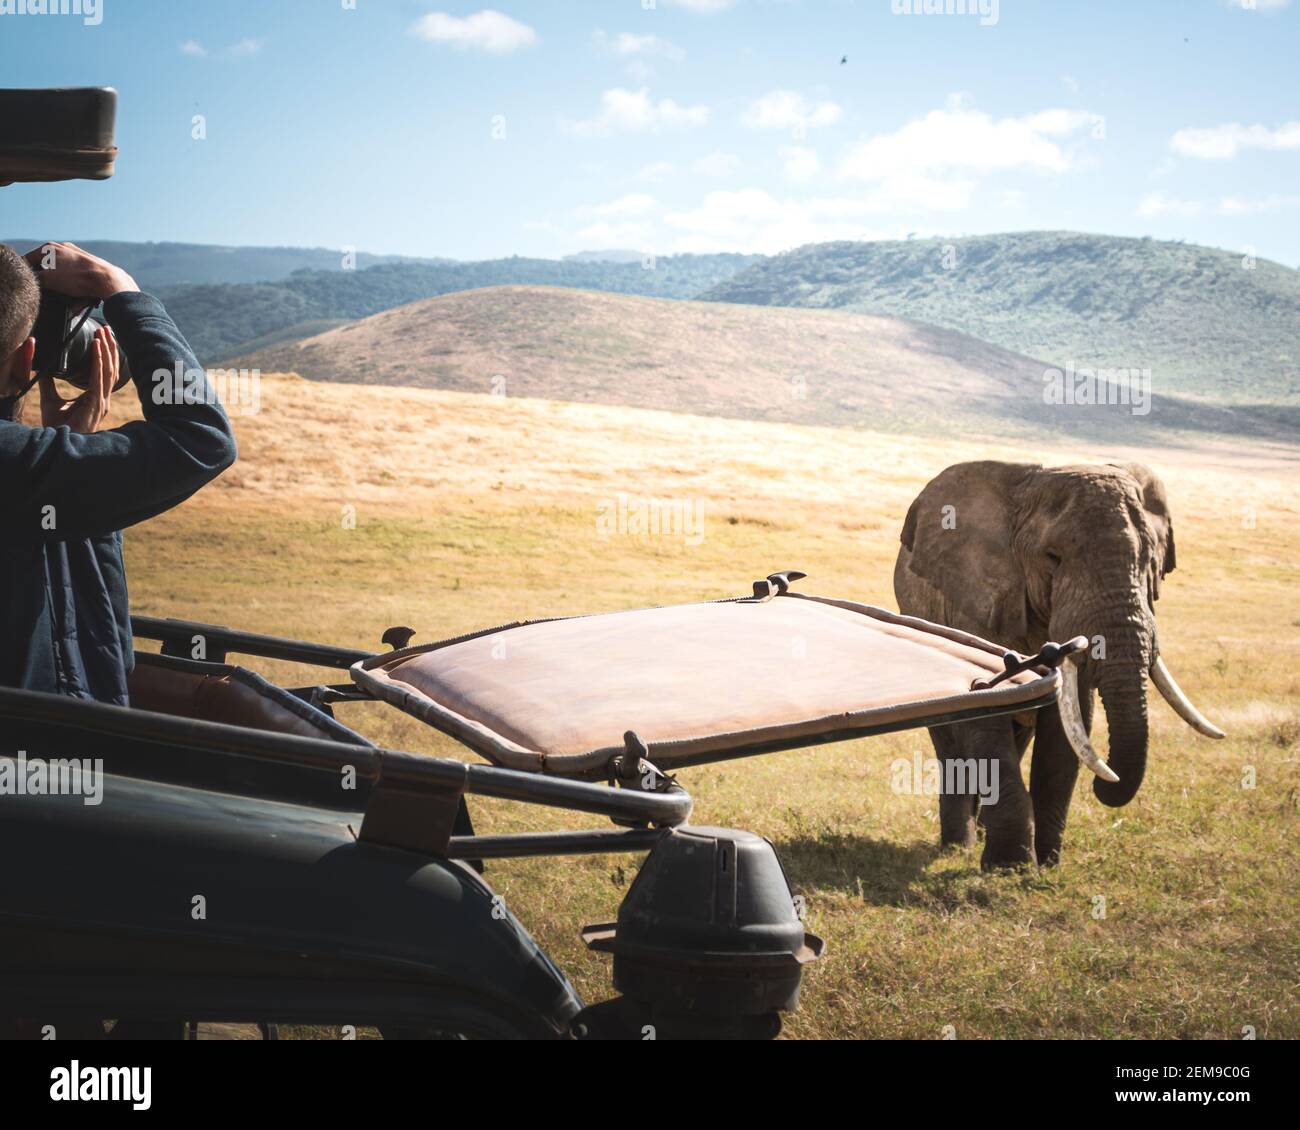 Photographer from a jeep shooting Isolated large adult male elephant (Elephantidae) at grassland conservation area of Ngorongoro crater. Wildlife safa Stock Photo